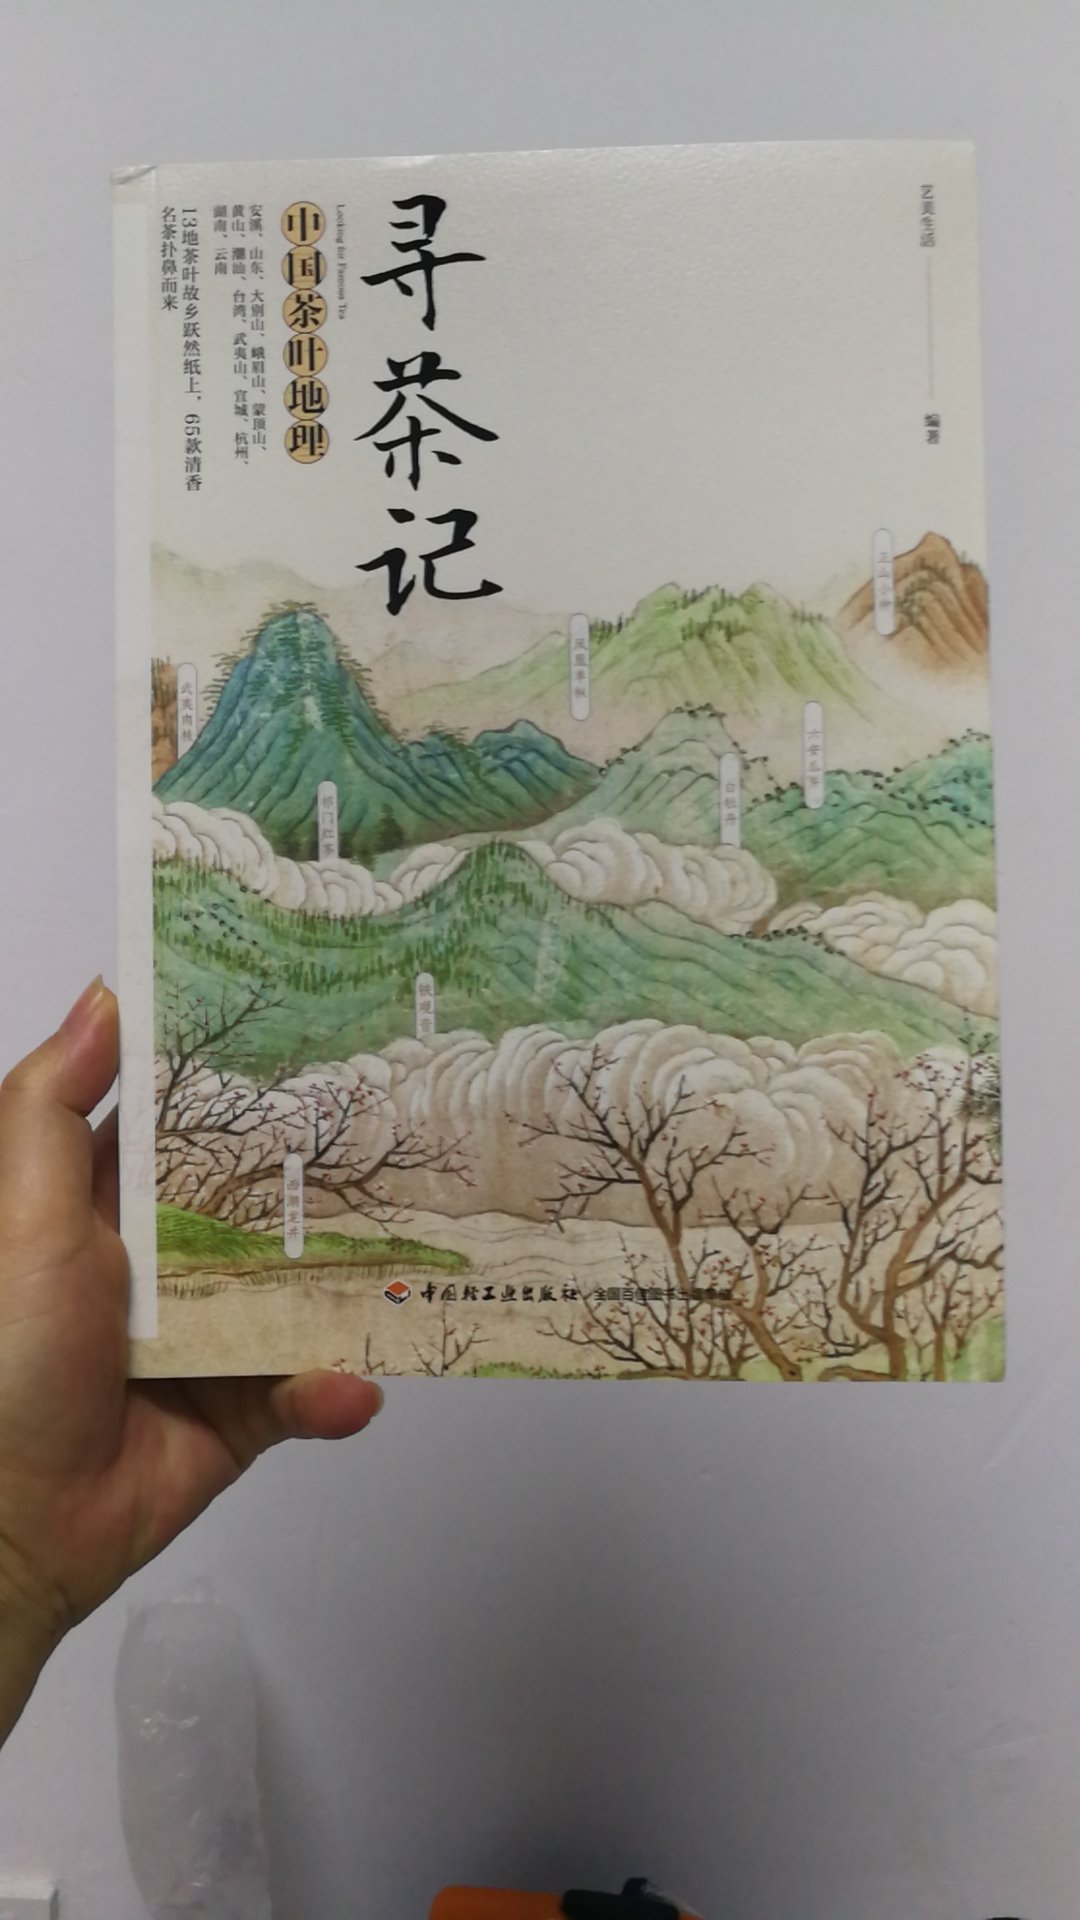 最近迷上了喝新会小青柑，正巧看到这本书，学习下各个地方的茶艺。